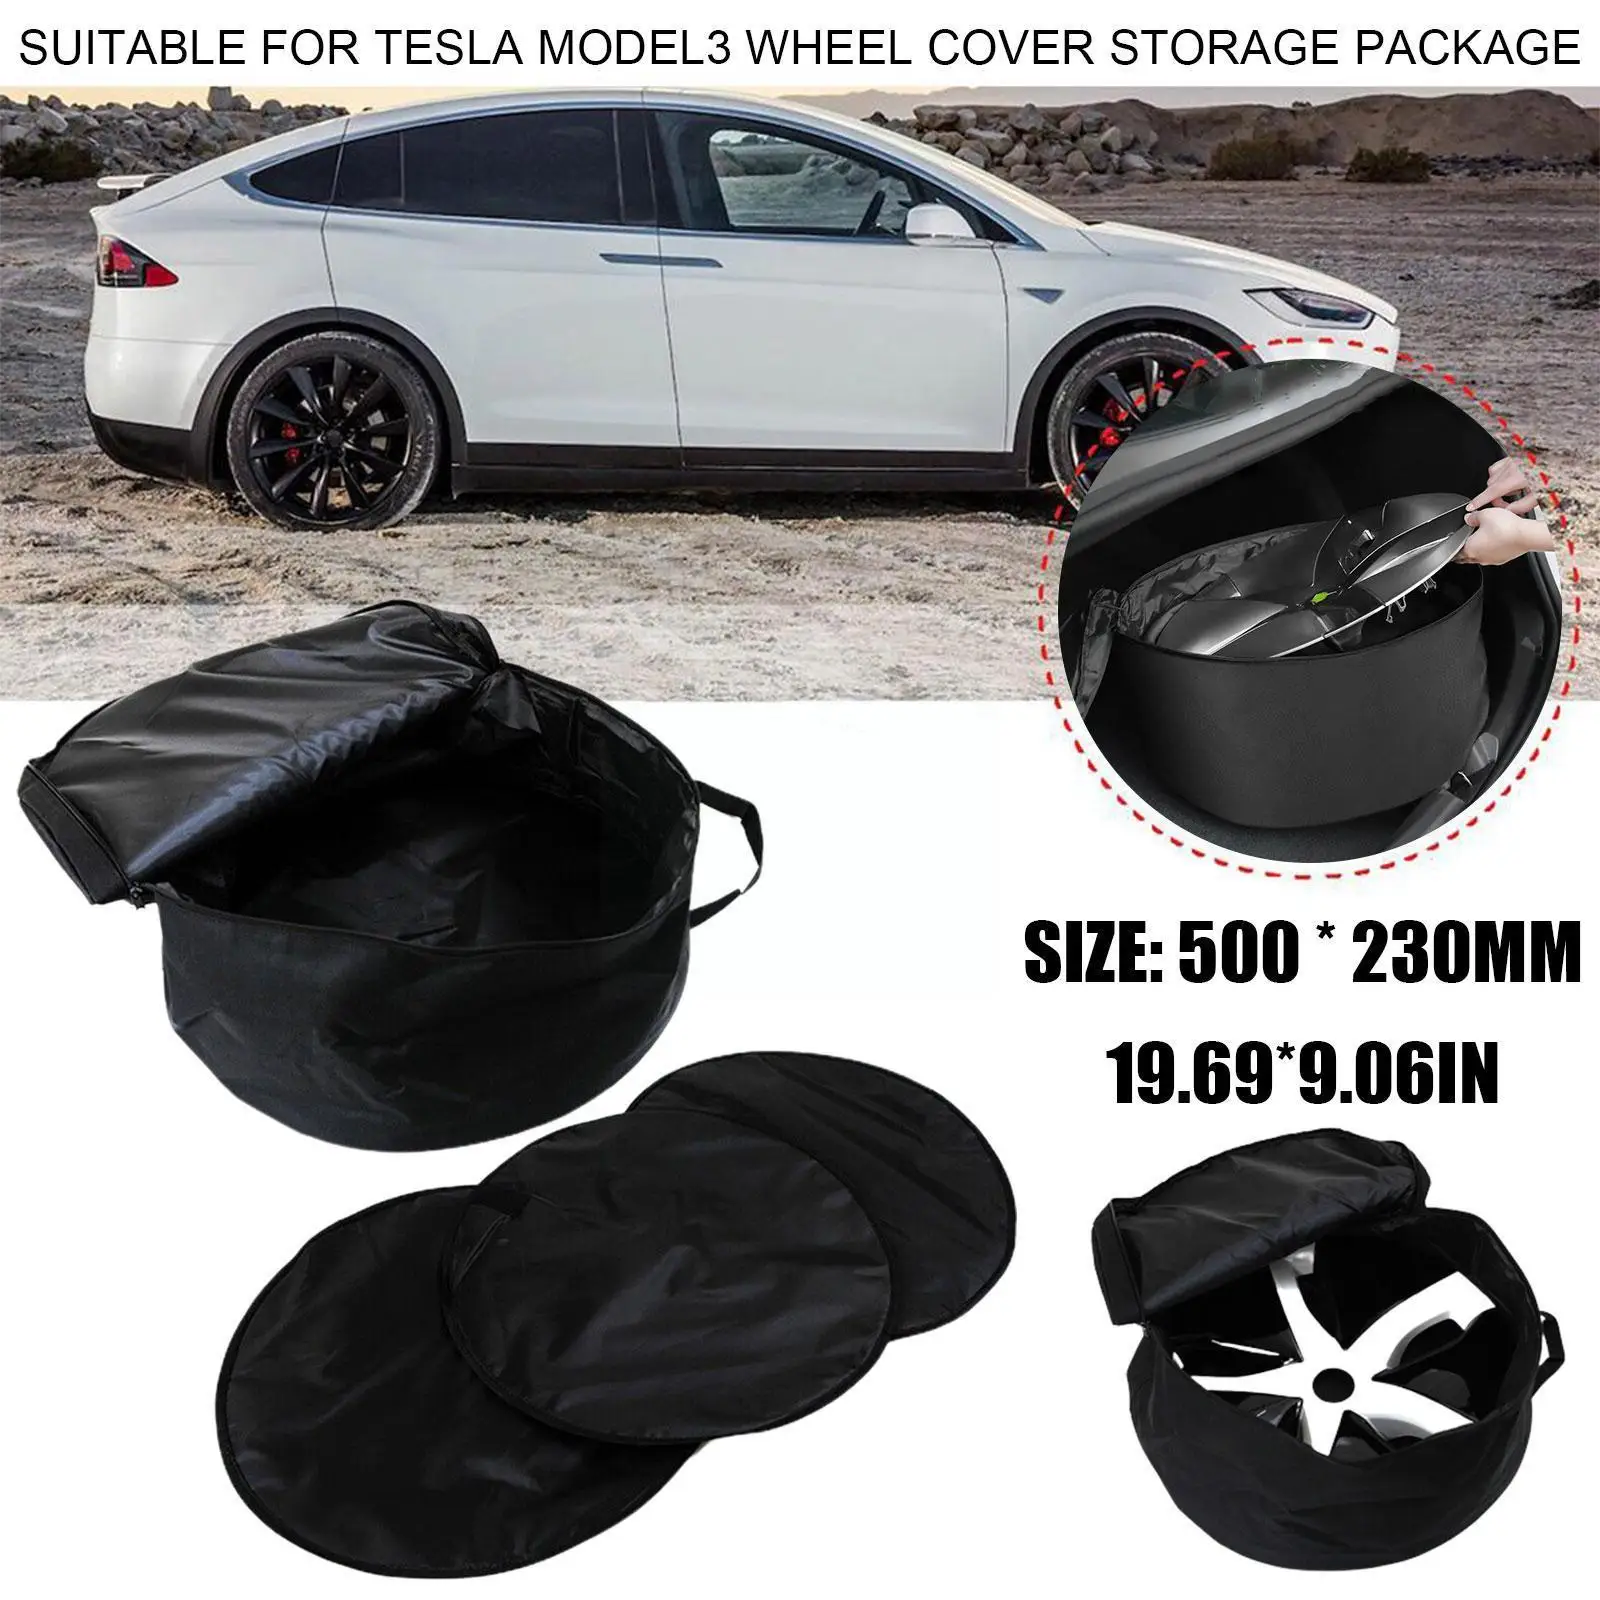 Сумка для хранения рулевой рубки автомобиля Применима Для Tesla Model3, сумка для хранения Крышки ступицы, сумка для хранения модельной ступицы, аксессуары для модернизации S5I1 0